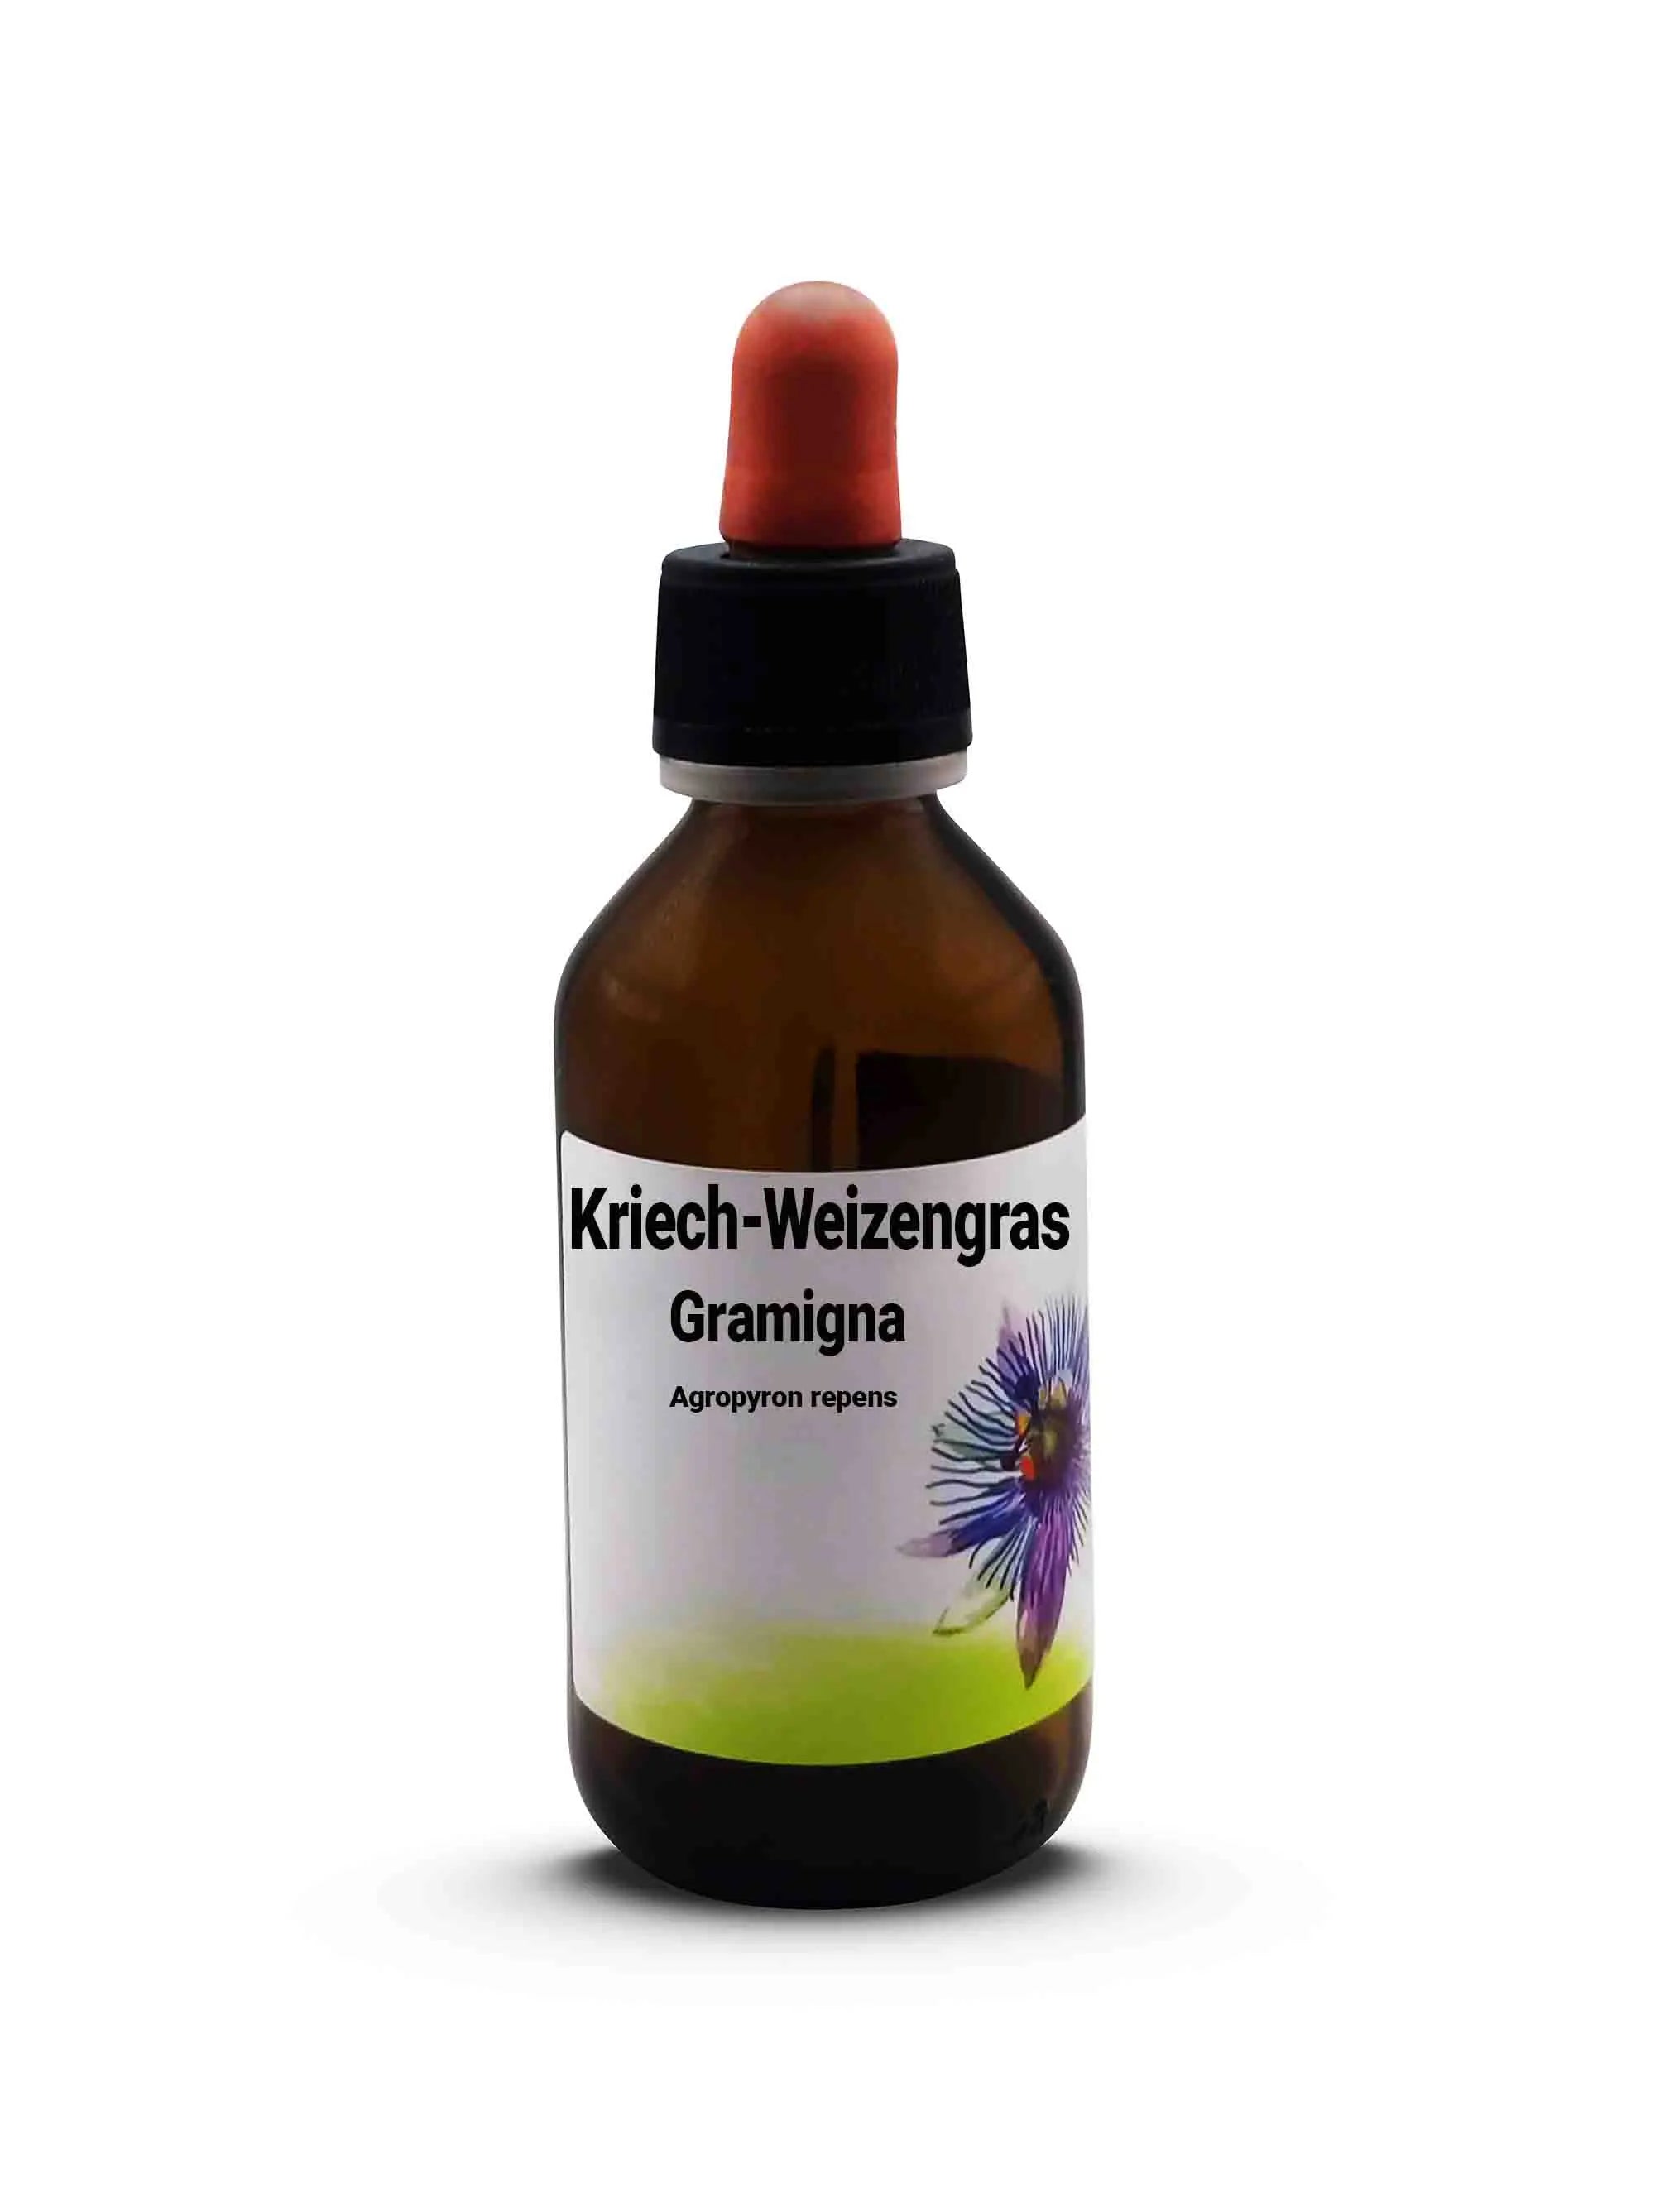 Kriech-Weizengras  Gramigna - Agropyron repens 100 ml